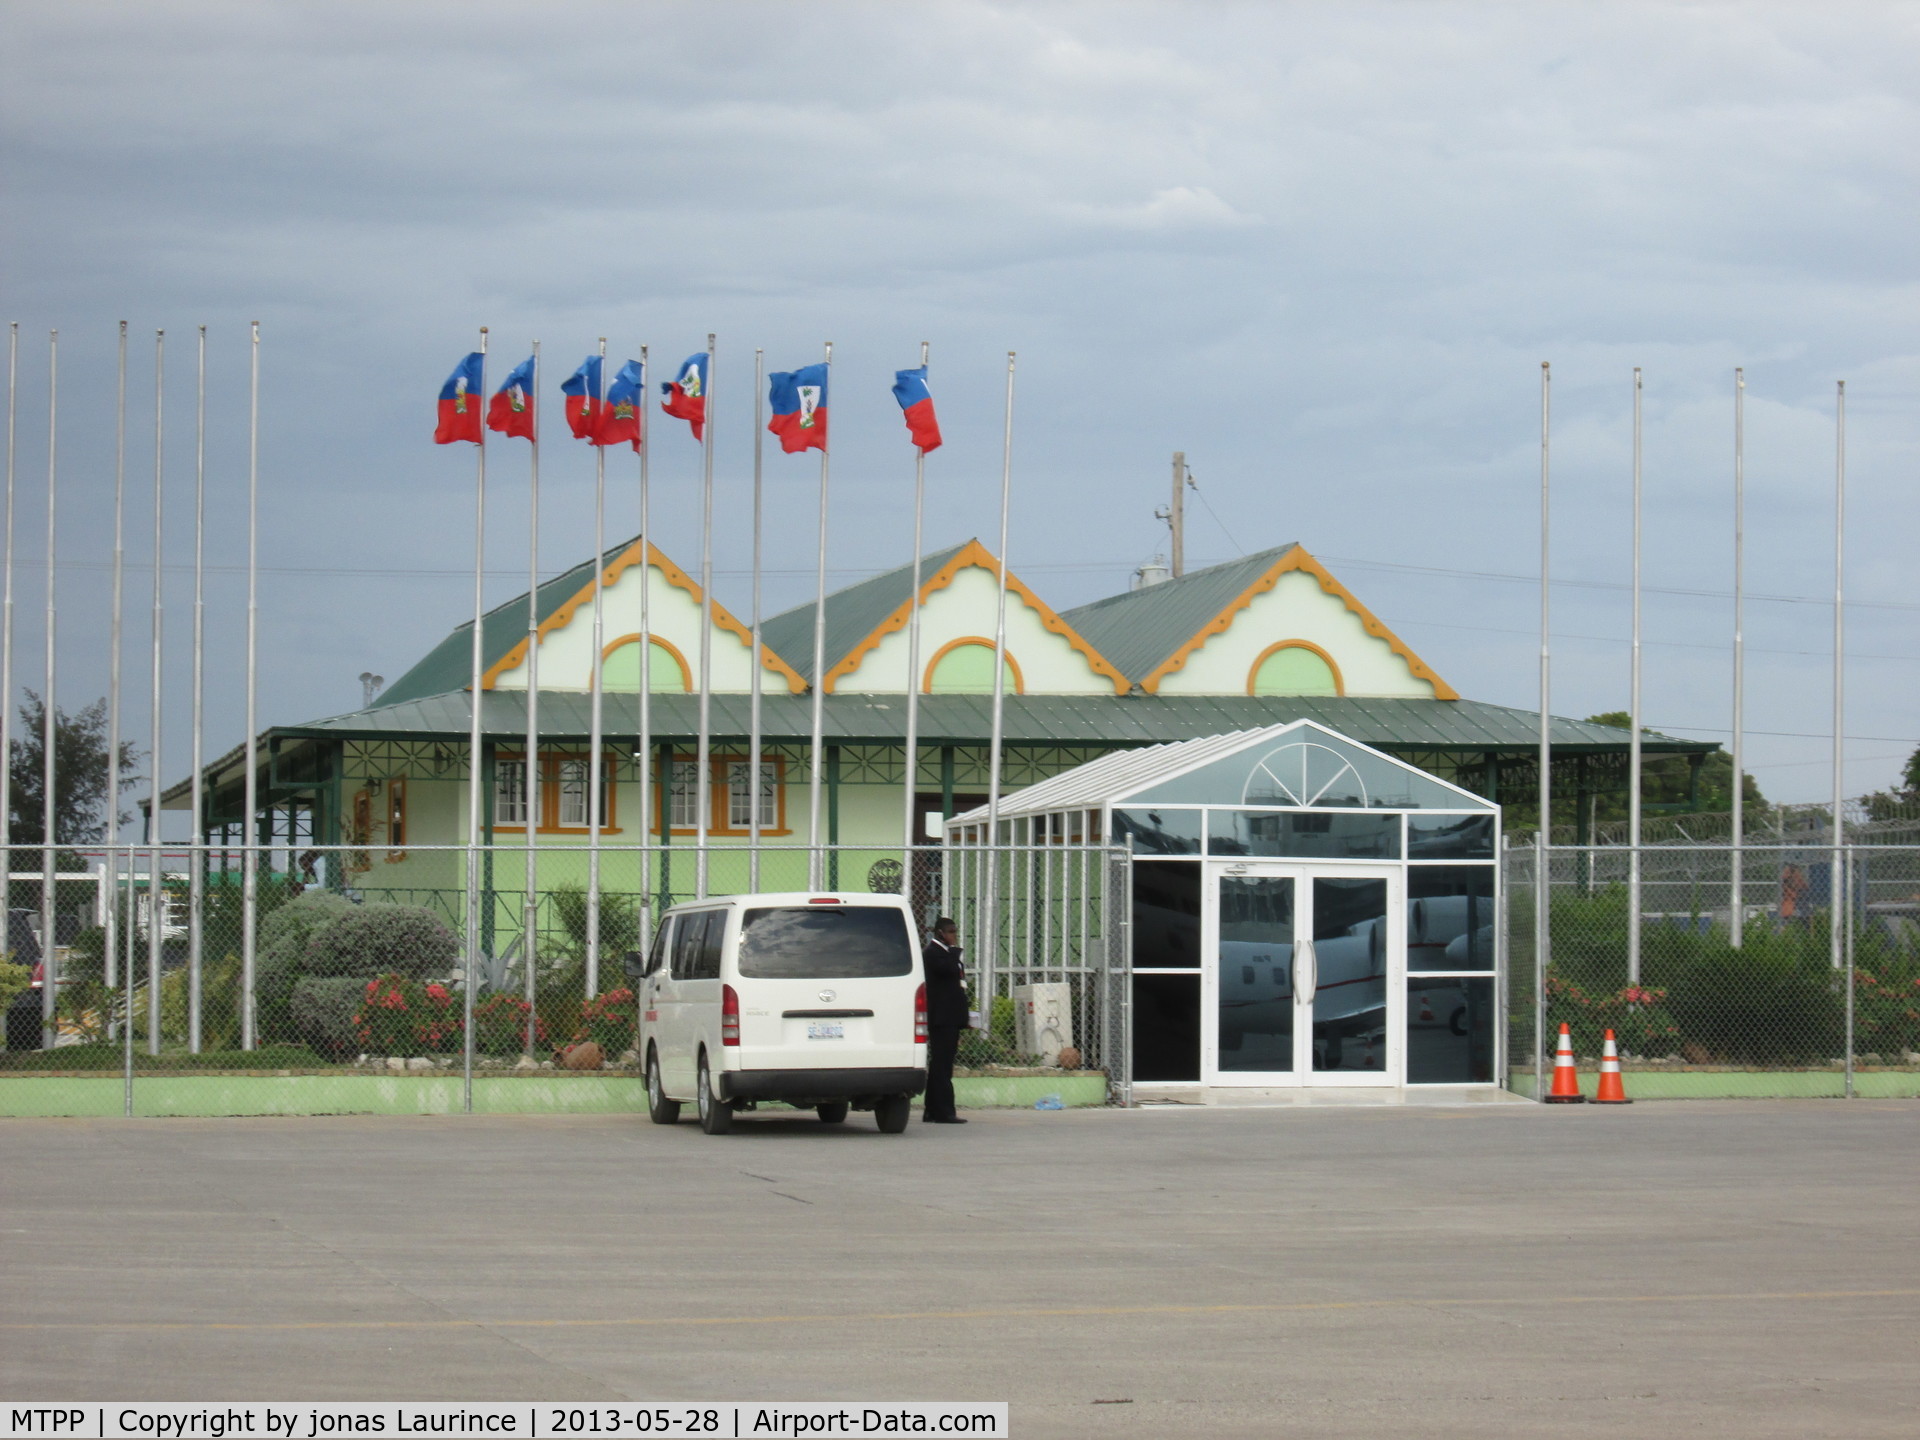 Port-au-Prince International Airport (Toussaint Louverture Int'l), Port-au-Prince Haiti (MTPP) - Le Salon Diplomatique à l'Aéroport International Toussaint Louverture de Port-au-Prince